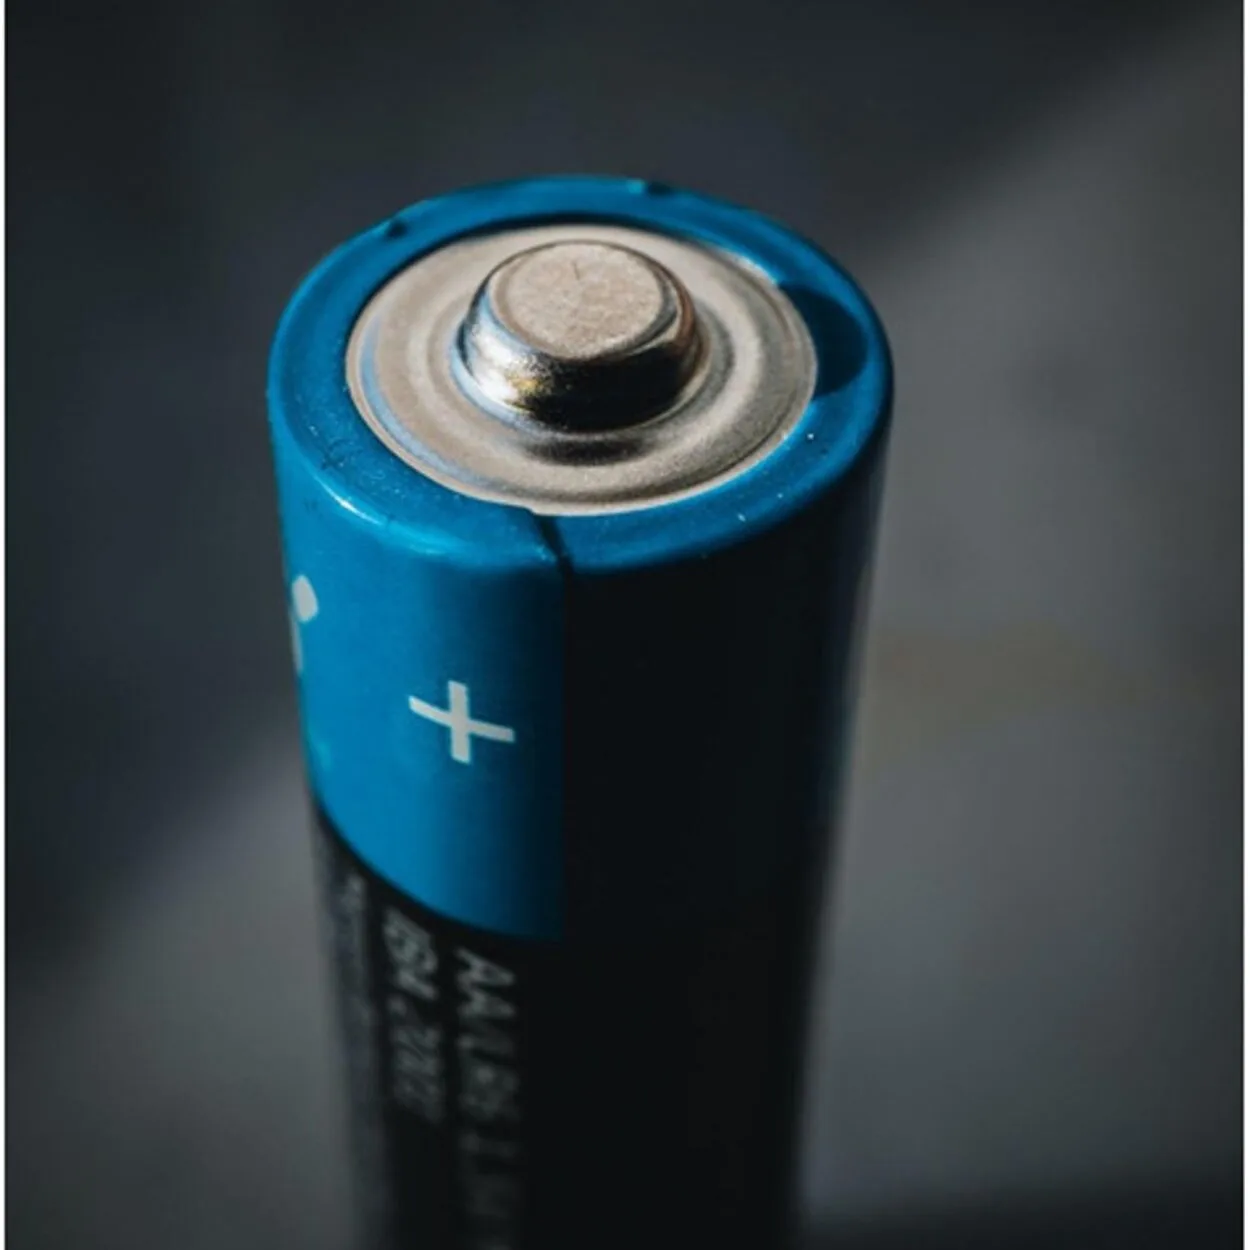  Wat is het verschil tussen CR2032 en CR2016 batterijen (uitgelegd) - All The Differences